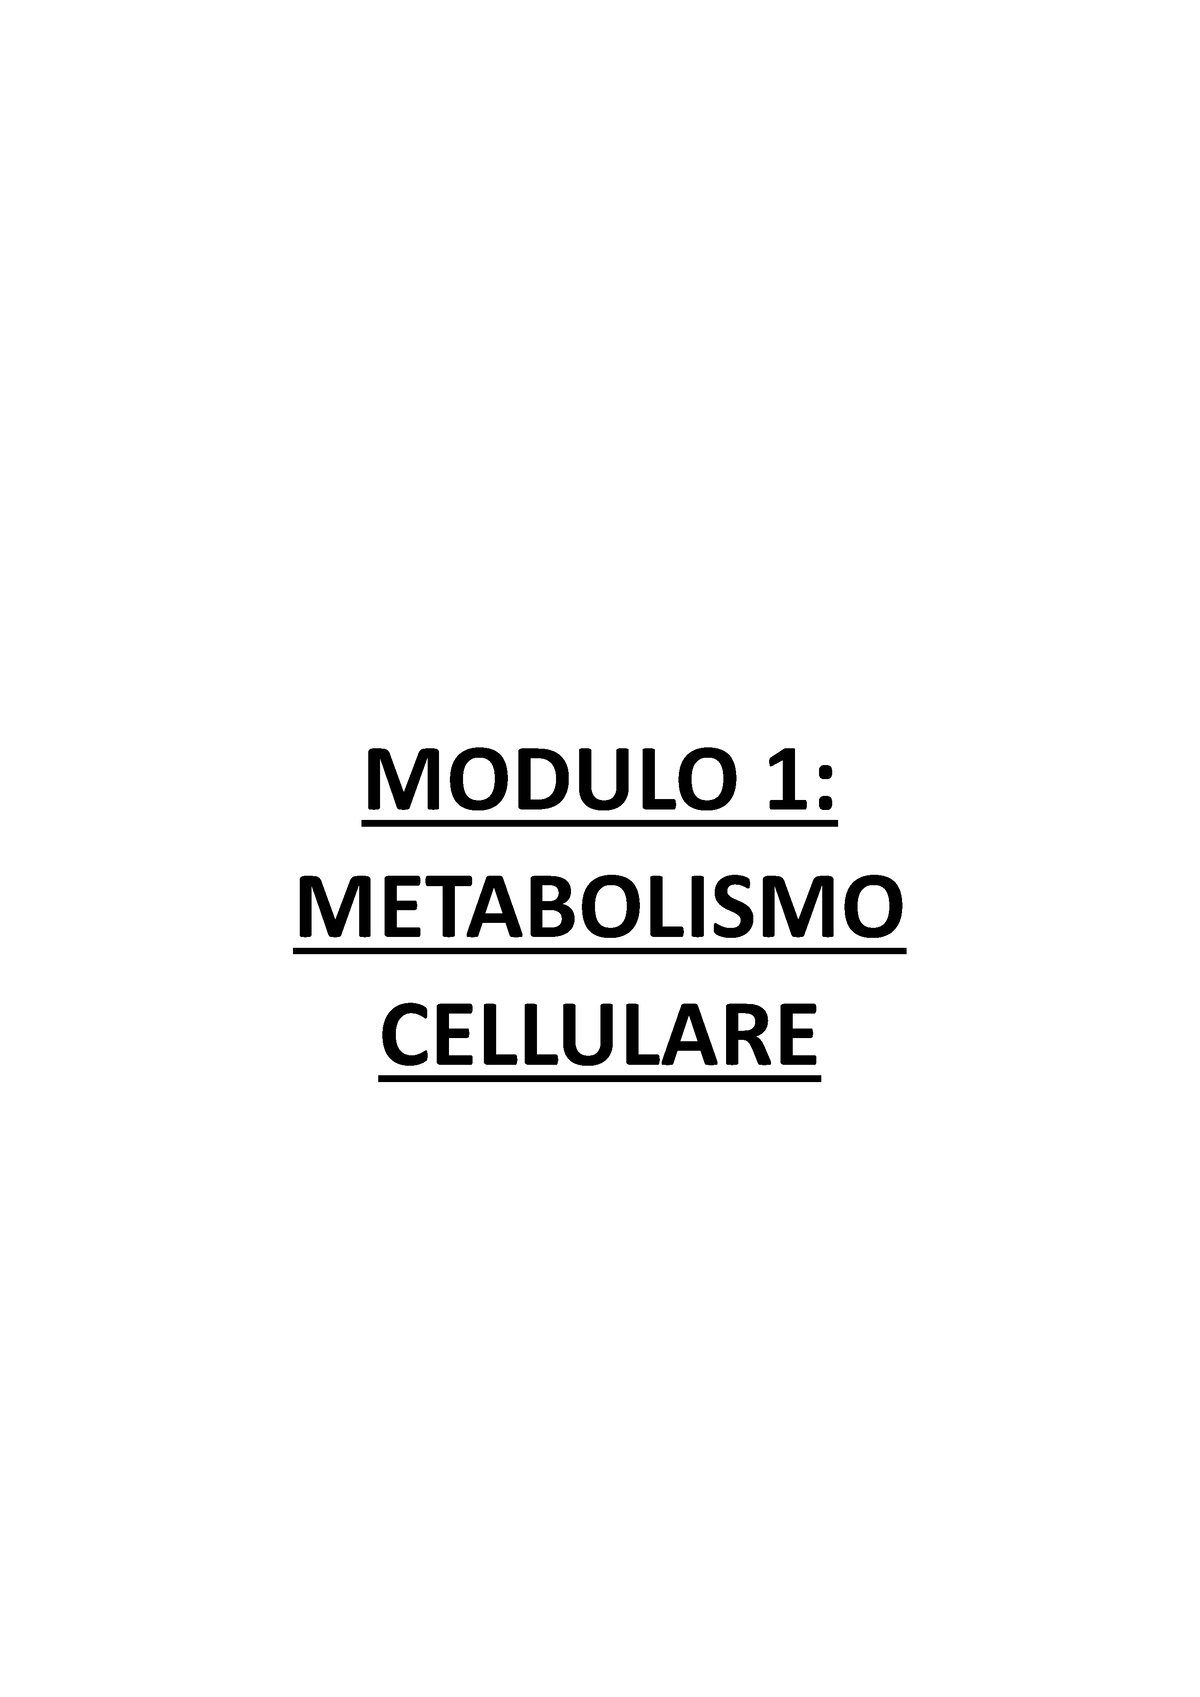 Il Metabolismo Cellulare Modulo Metabolismo Cellulare Il